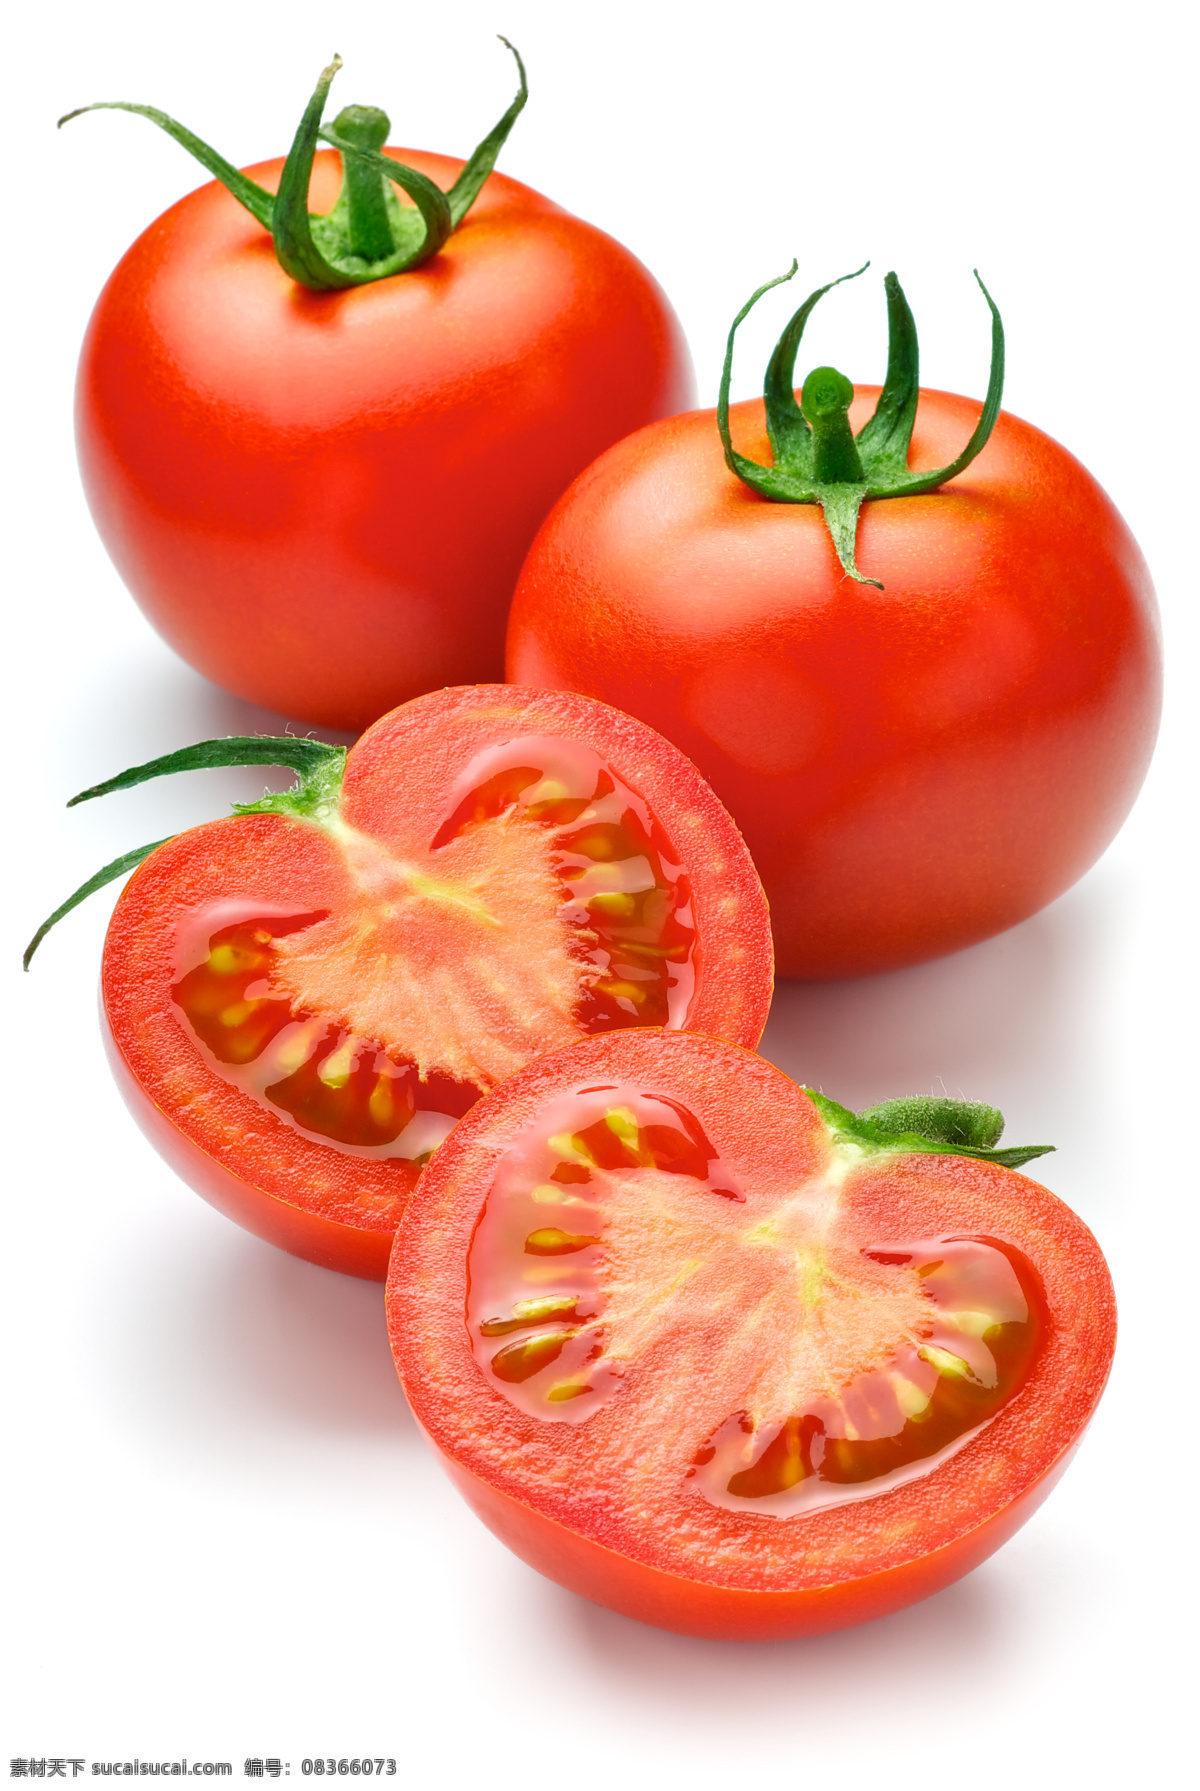 美食 原材料 美食原材料 西红柿 蕃茄 新鲜蔬菜 蕃茄摄影 红色元素 水果蔬菜 餐饮美食 蔬菜图片